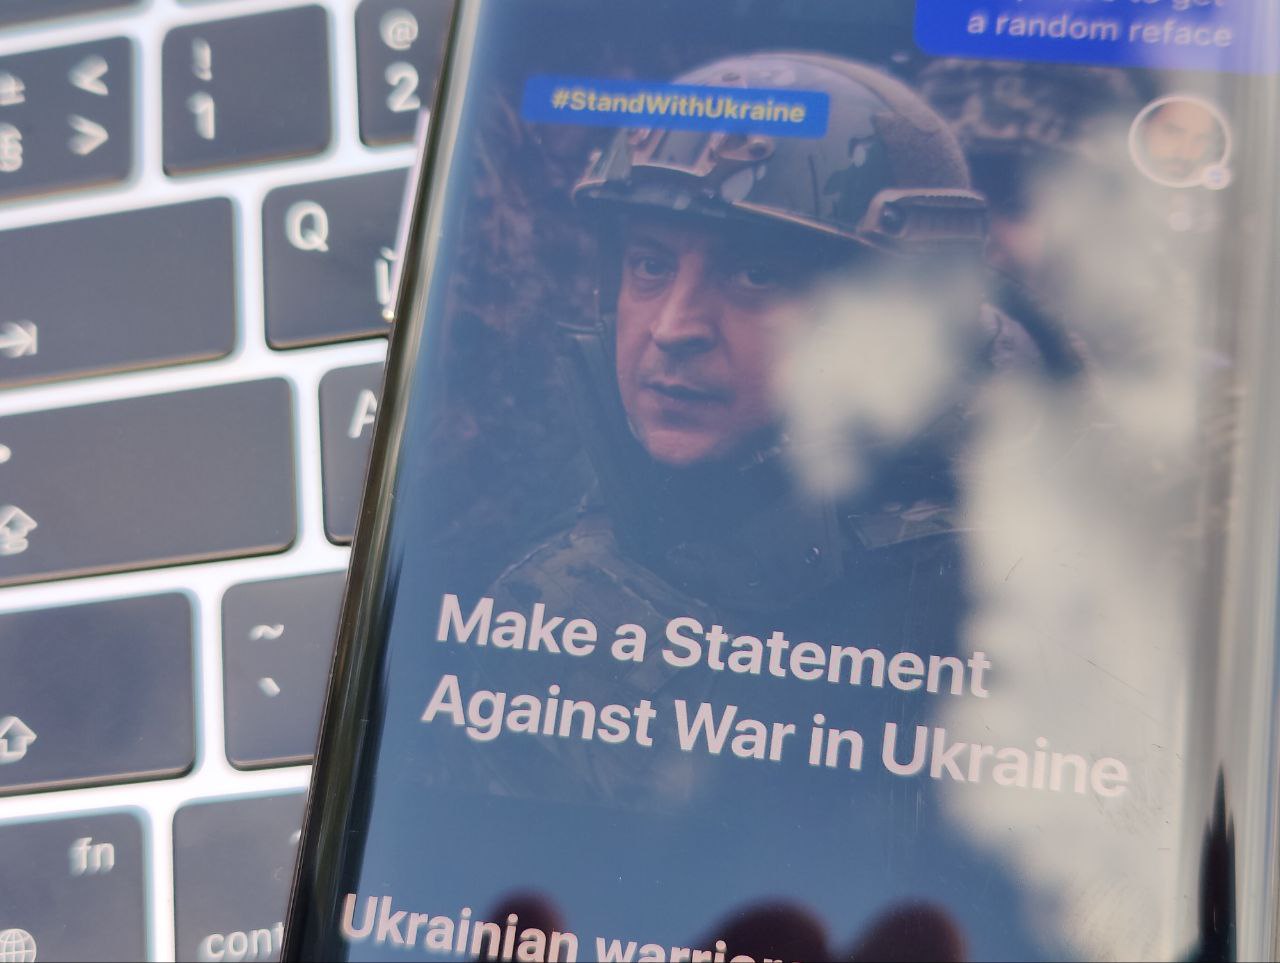 Как создали дипфейк Путина. Поговорили с топами украинского стартапа Reface, сделавшим его - Фото